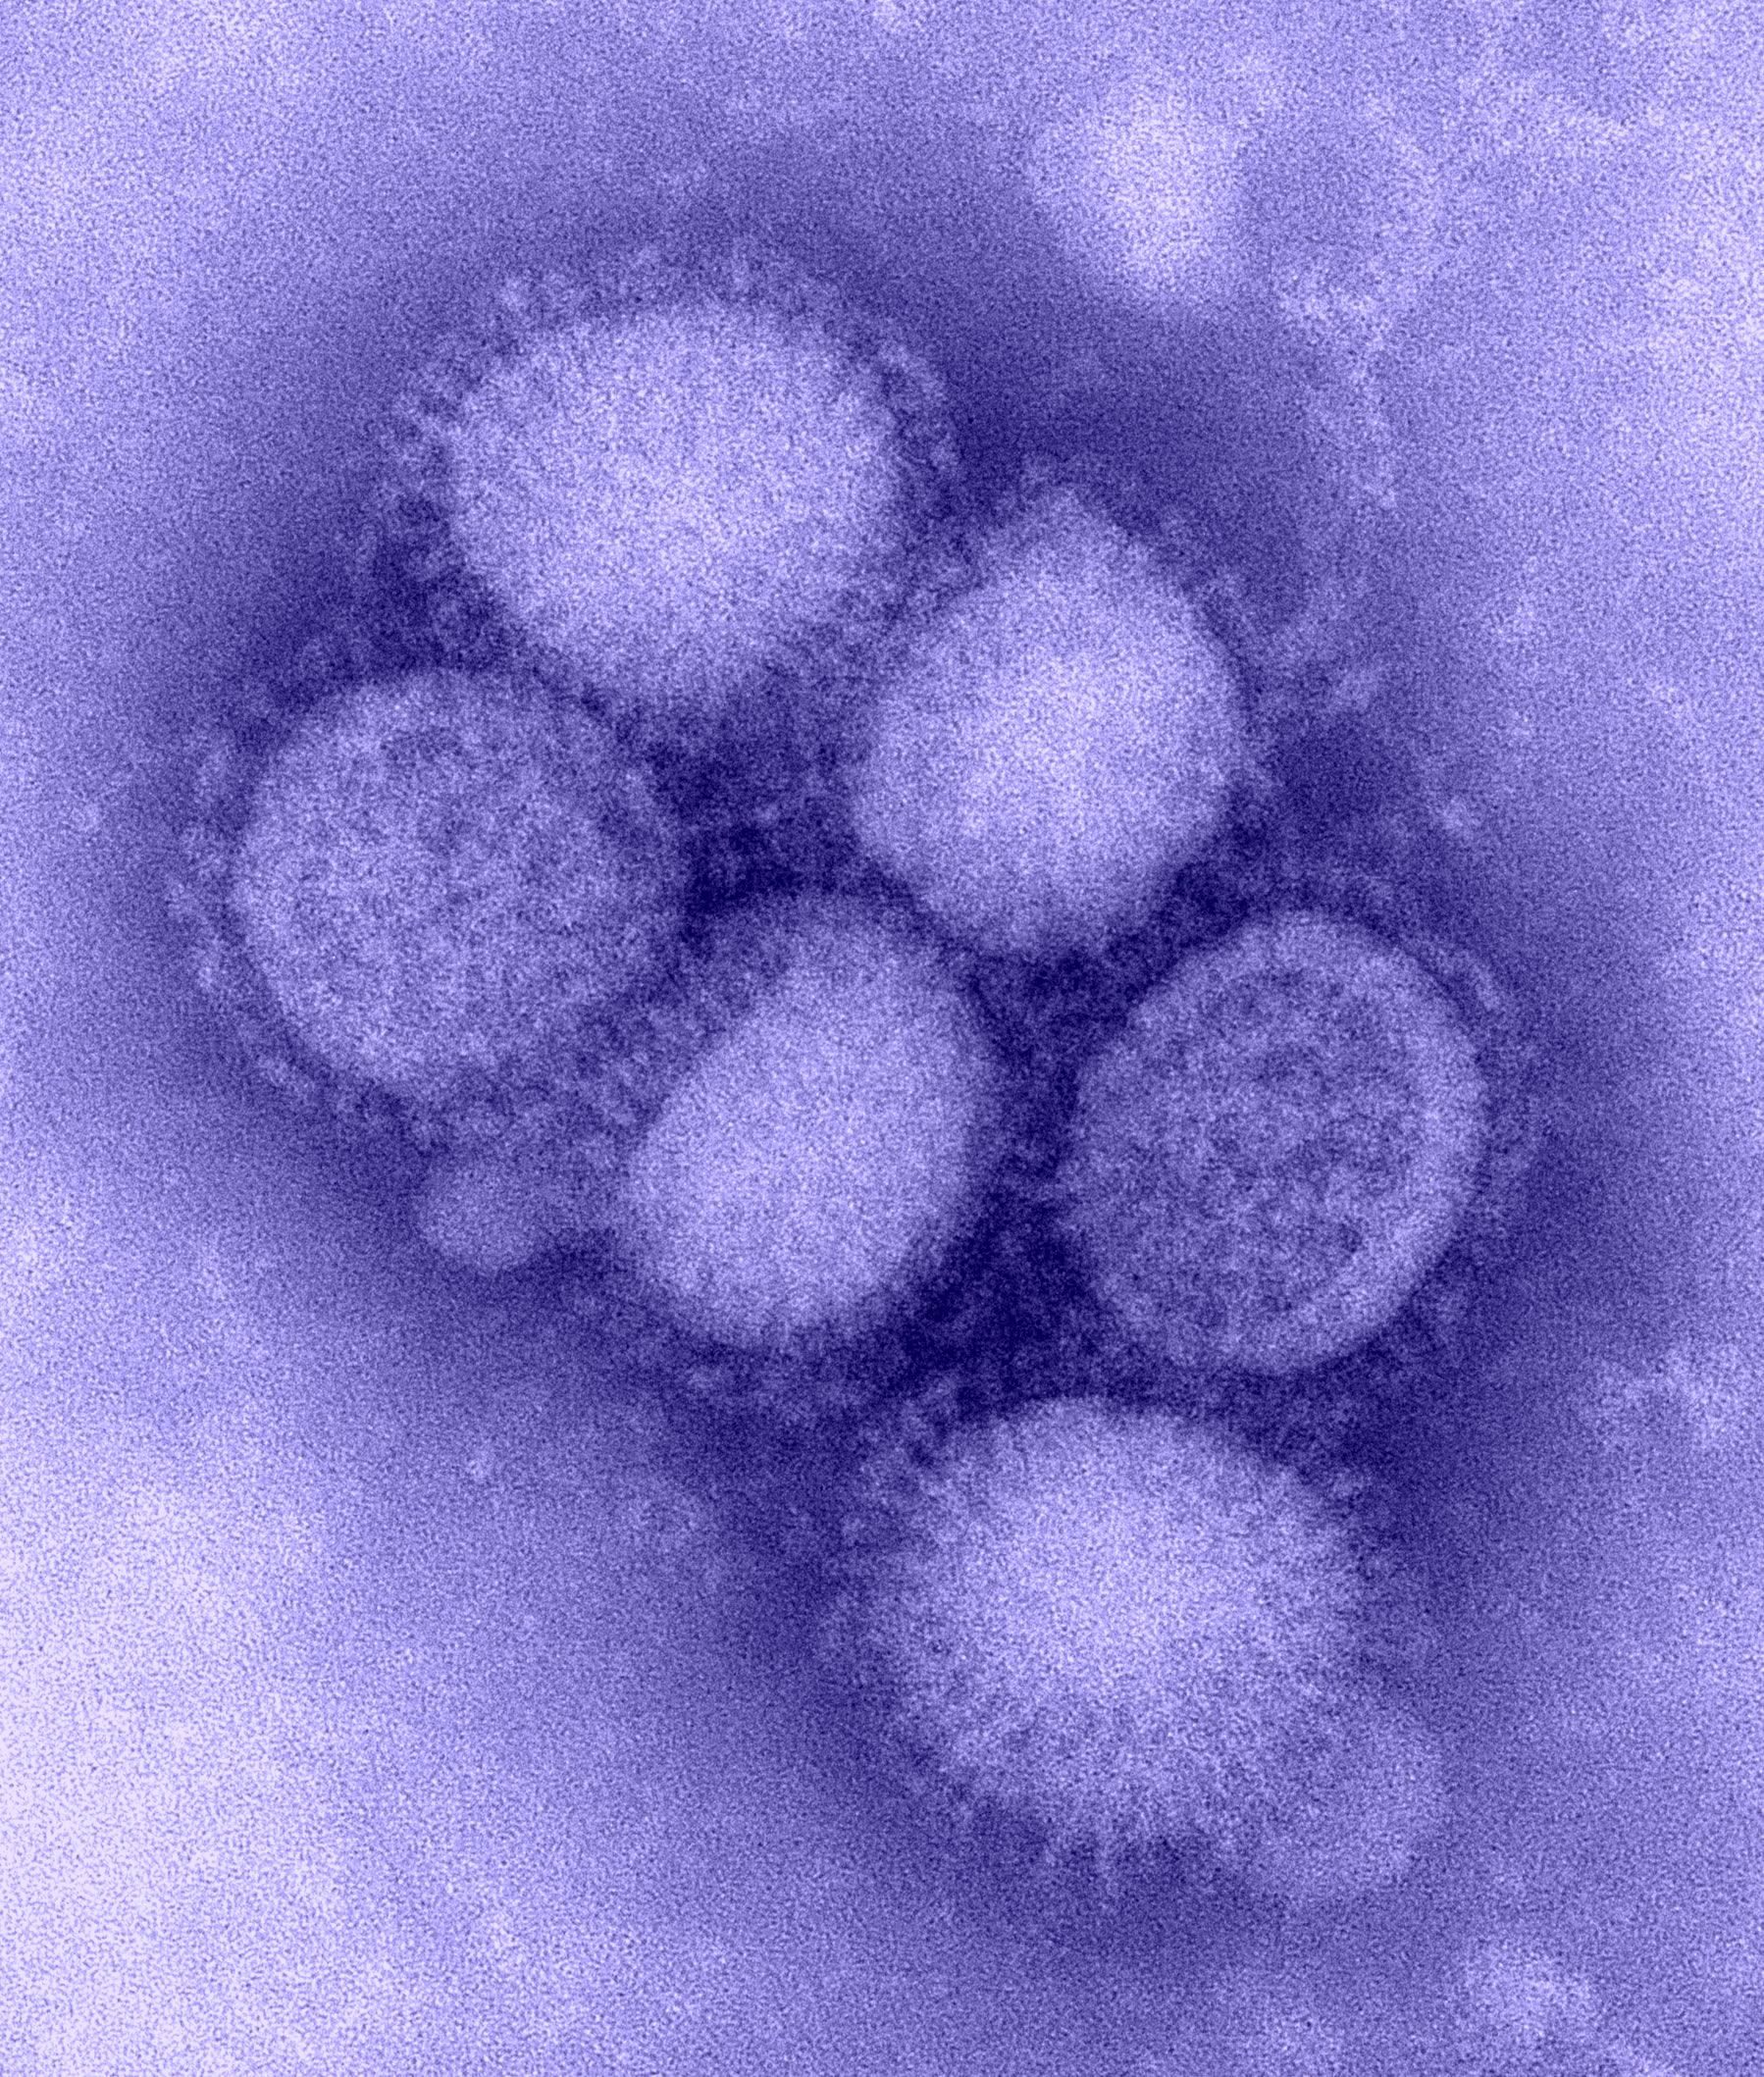 فيروس انفلونزا الخنازير